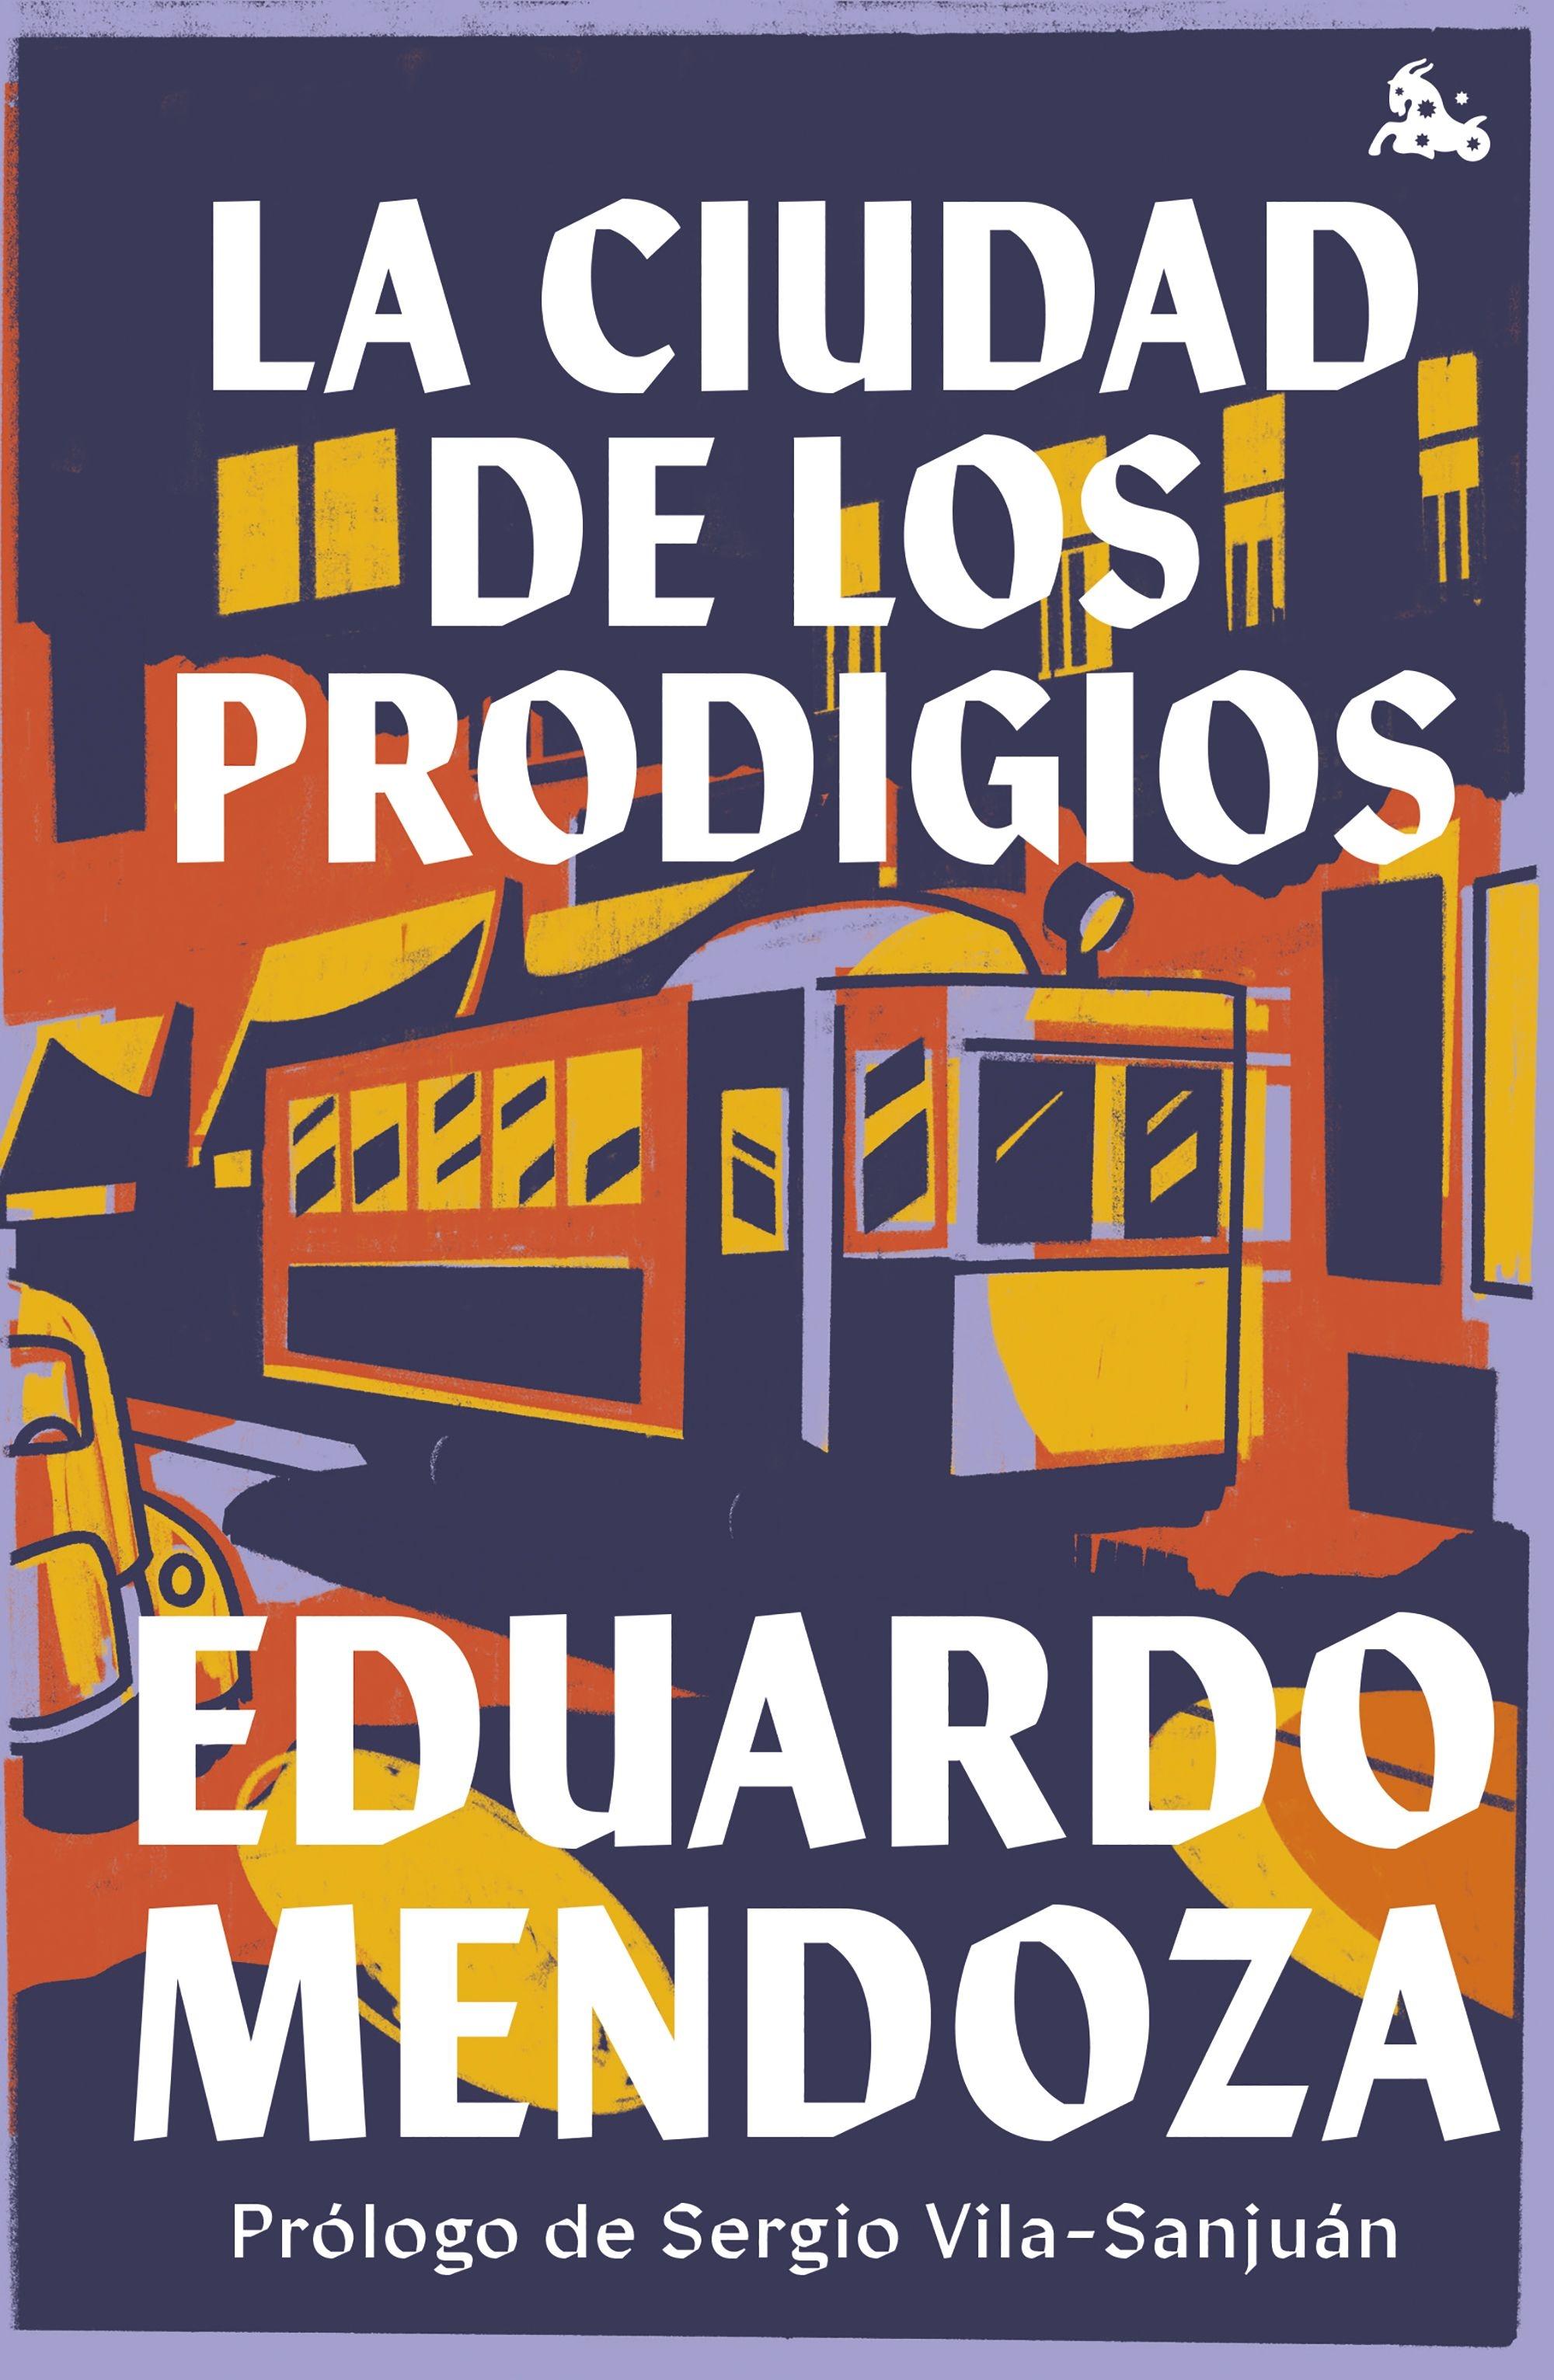 La Ciudad de los Prodigios "Prólogo de Sergio Vila-Sanjuán". 